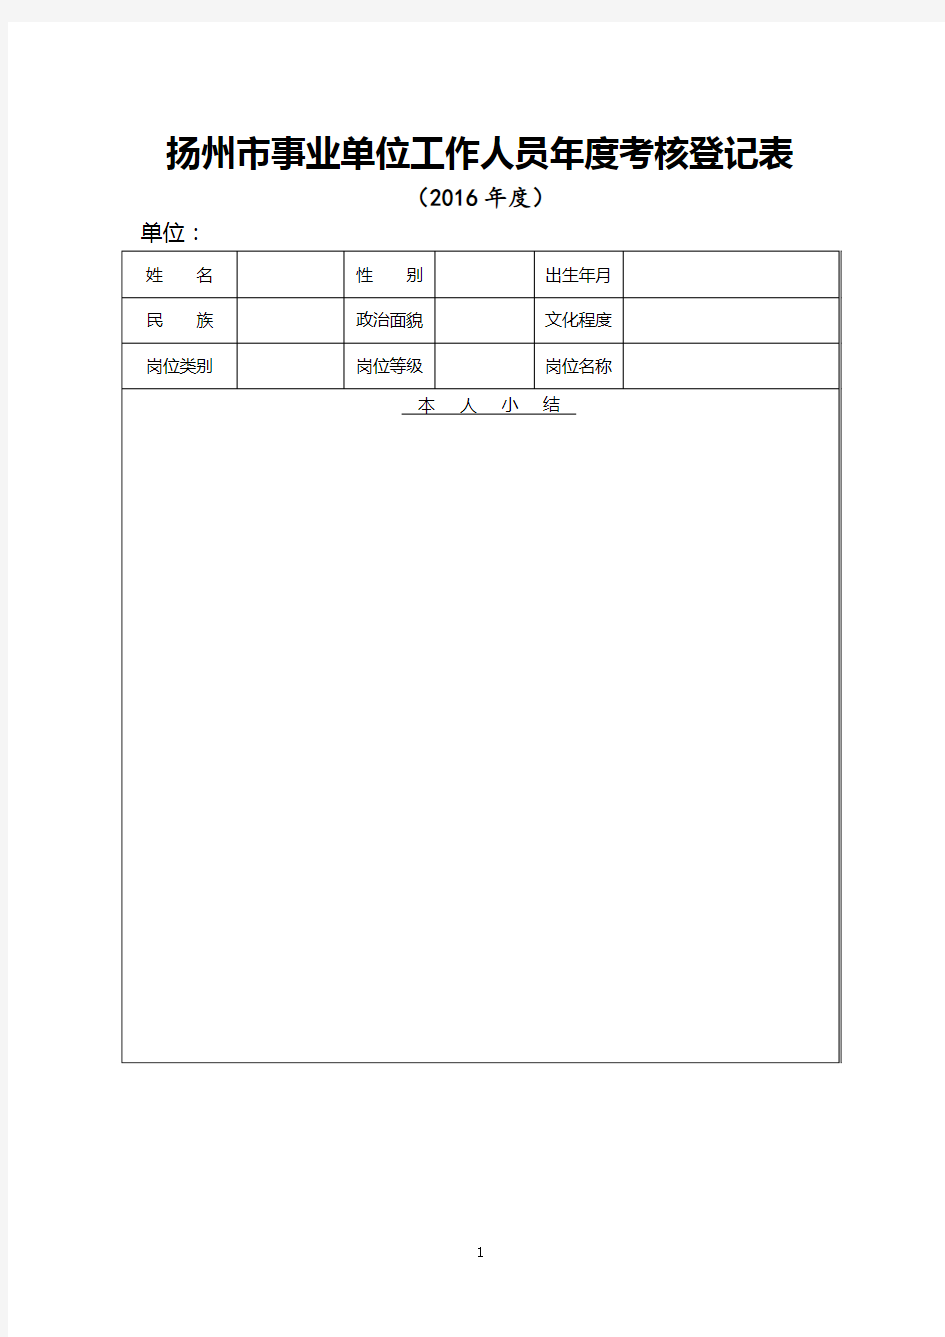 扬州市事业单位工作人员年度考核登记表